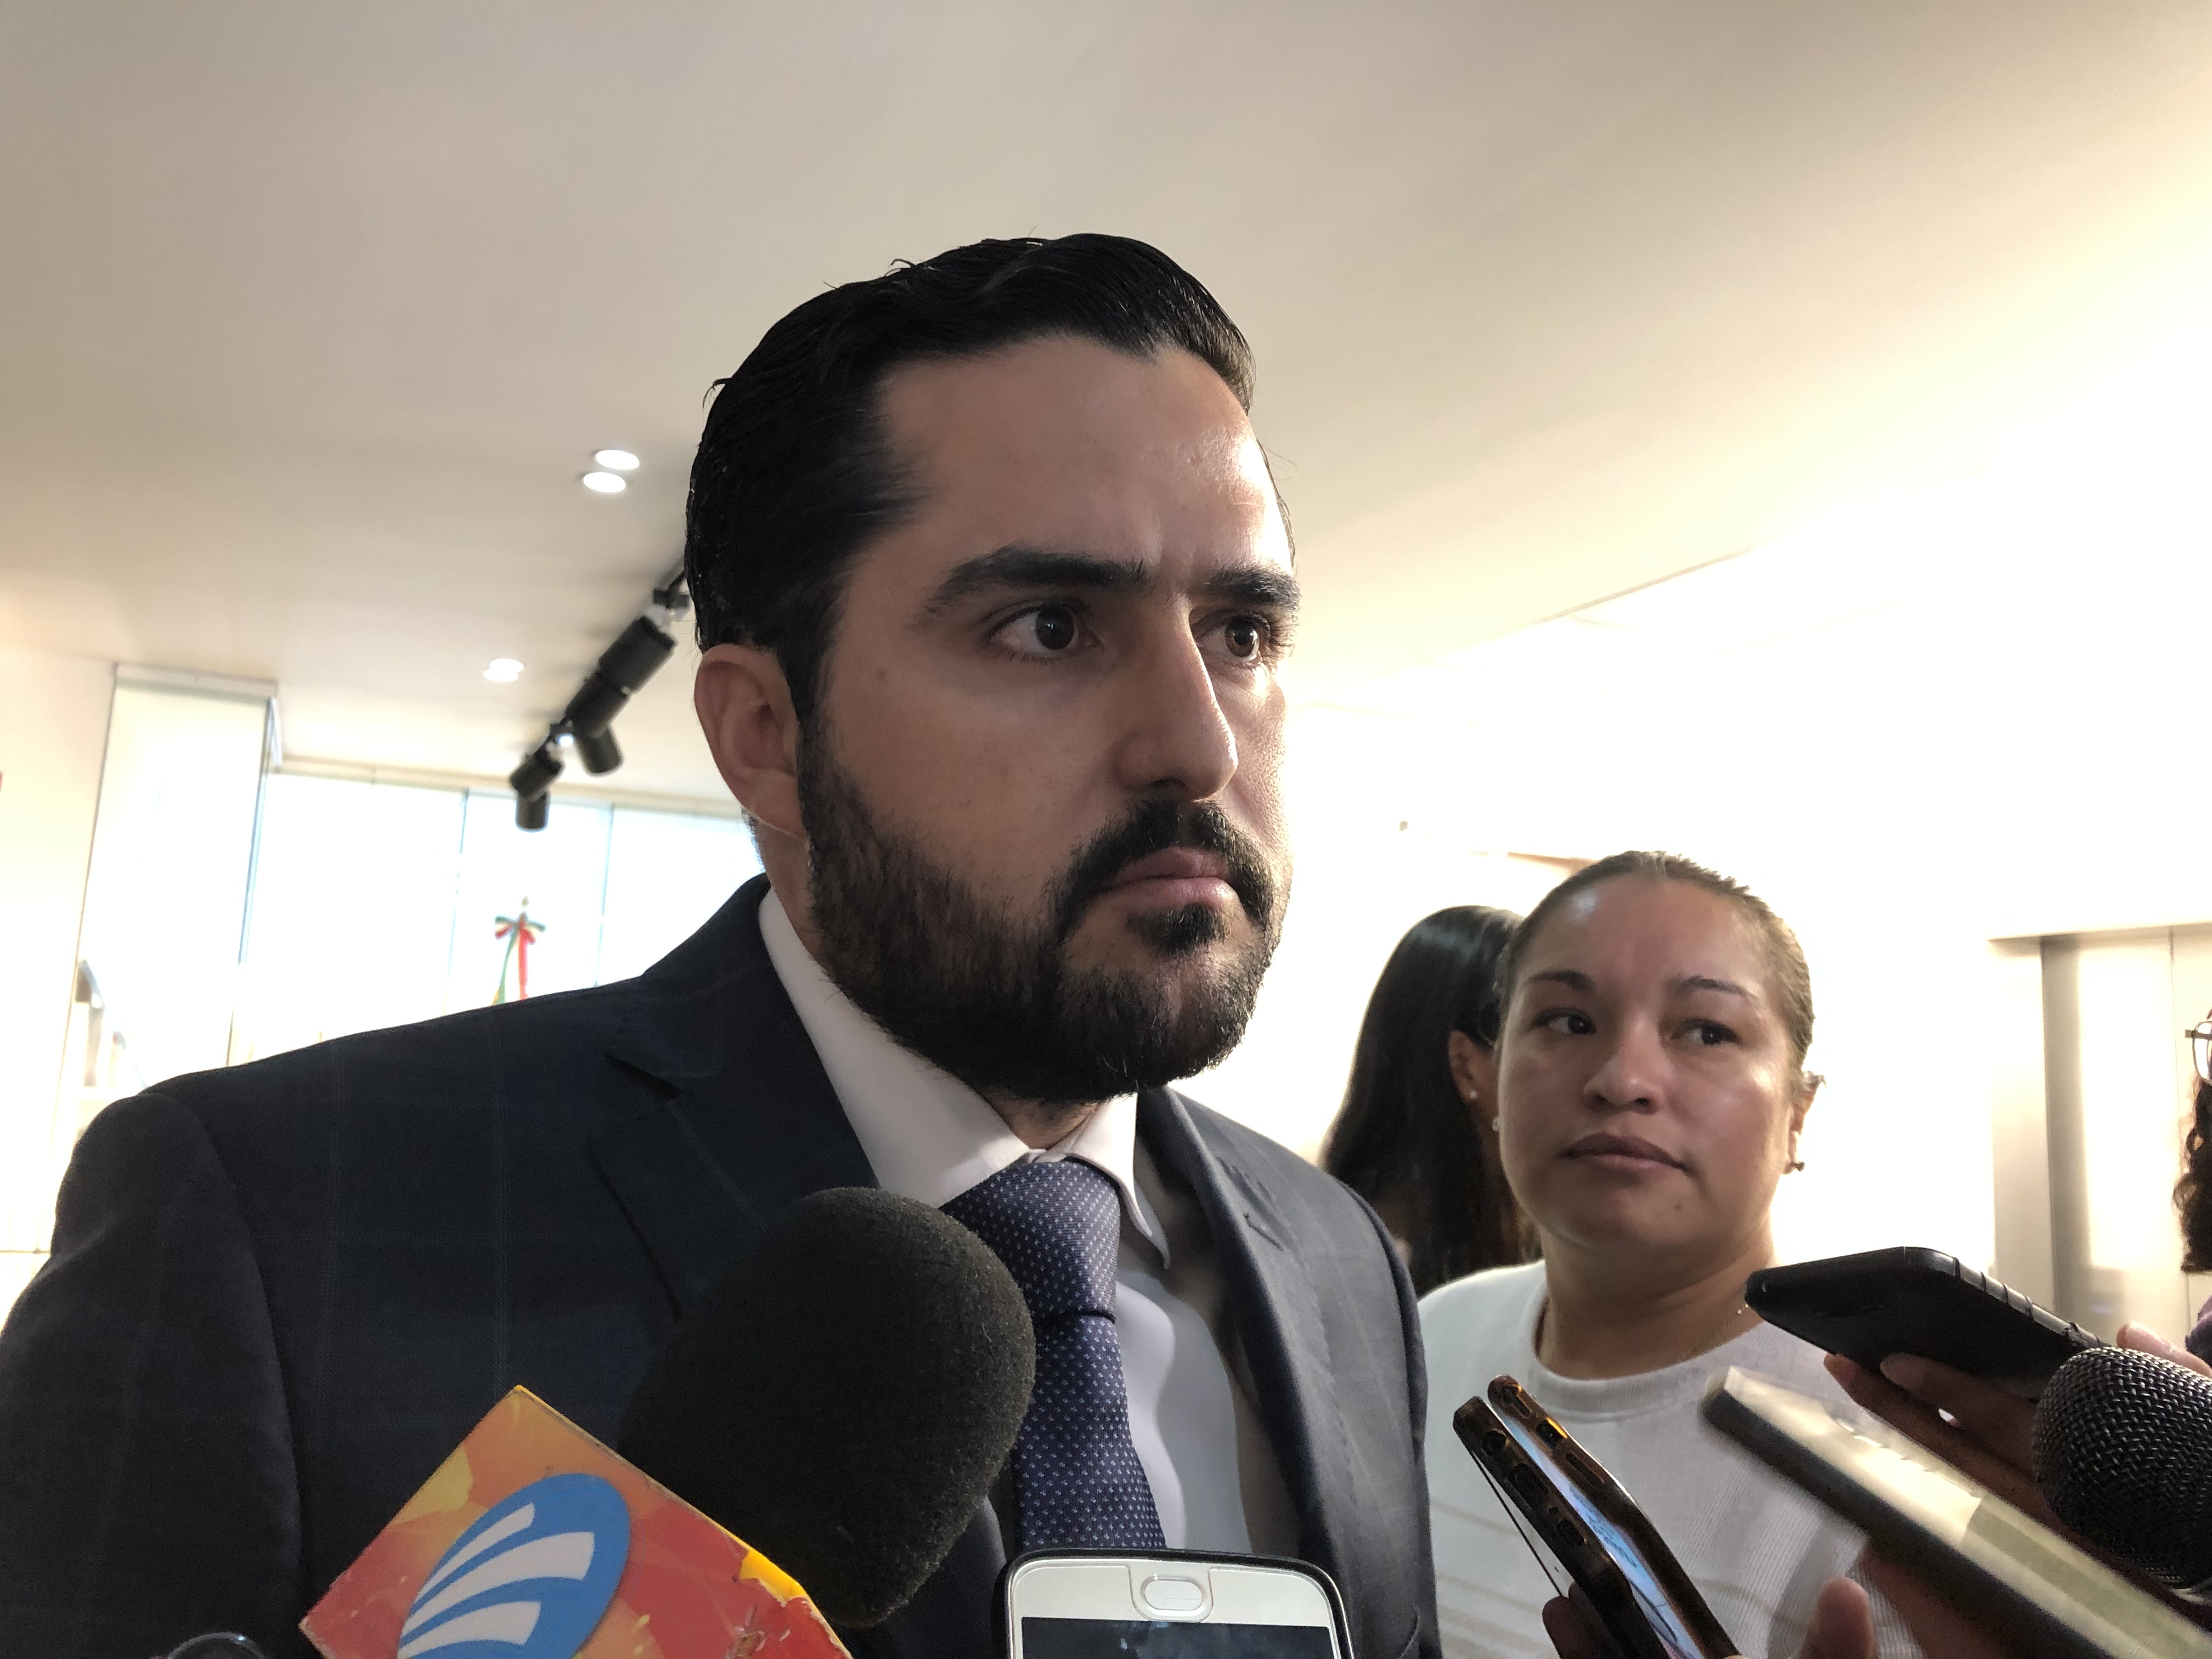  Aún sin resolución la denuncia interpuesta contra Agustín Dorantes